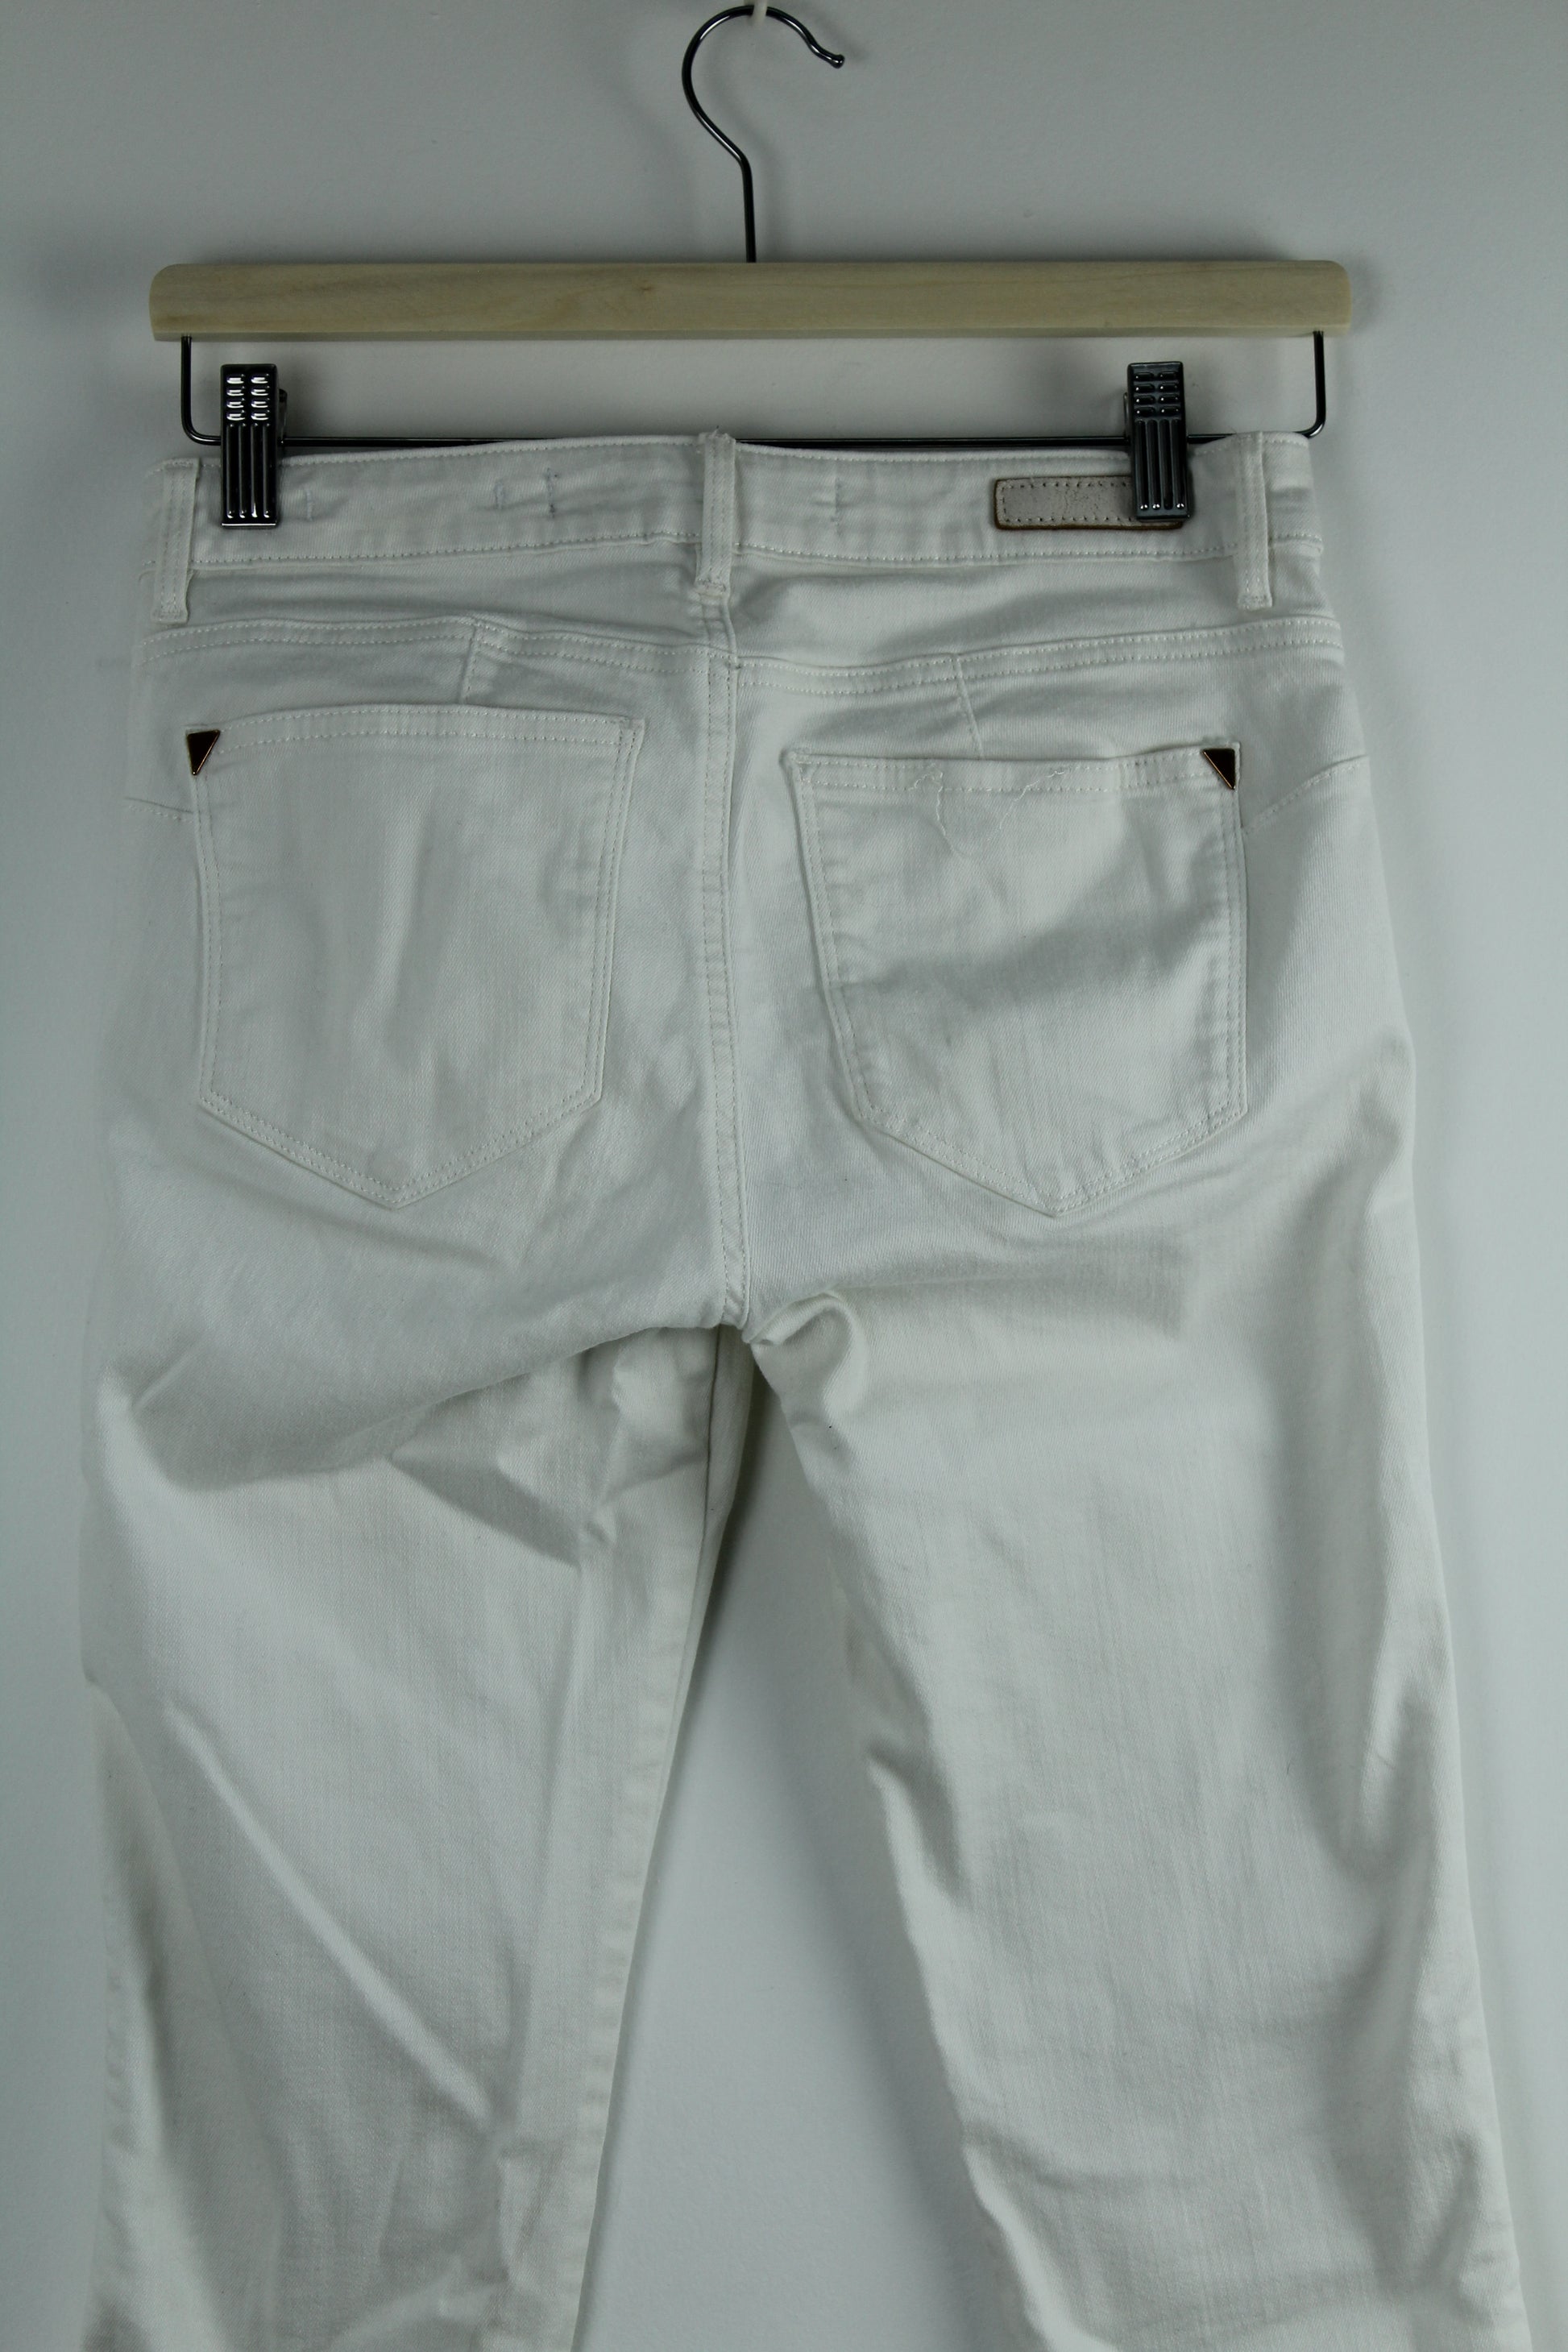 witte jeans broek maat 29 tweedehands – Meisje met de parels